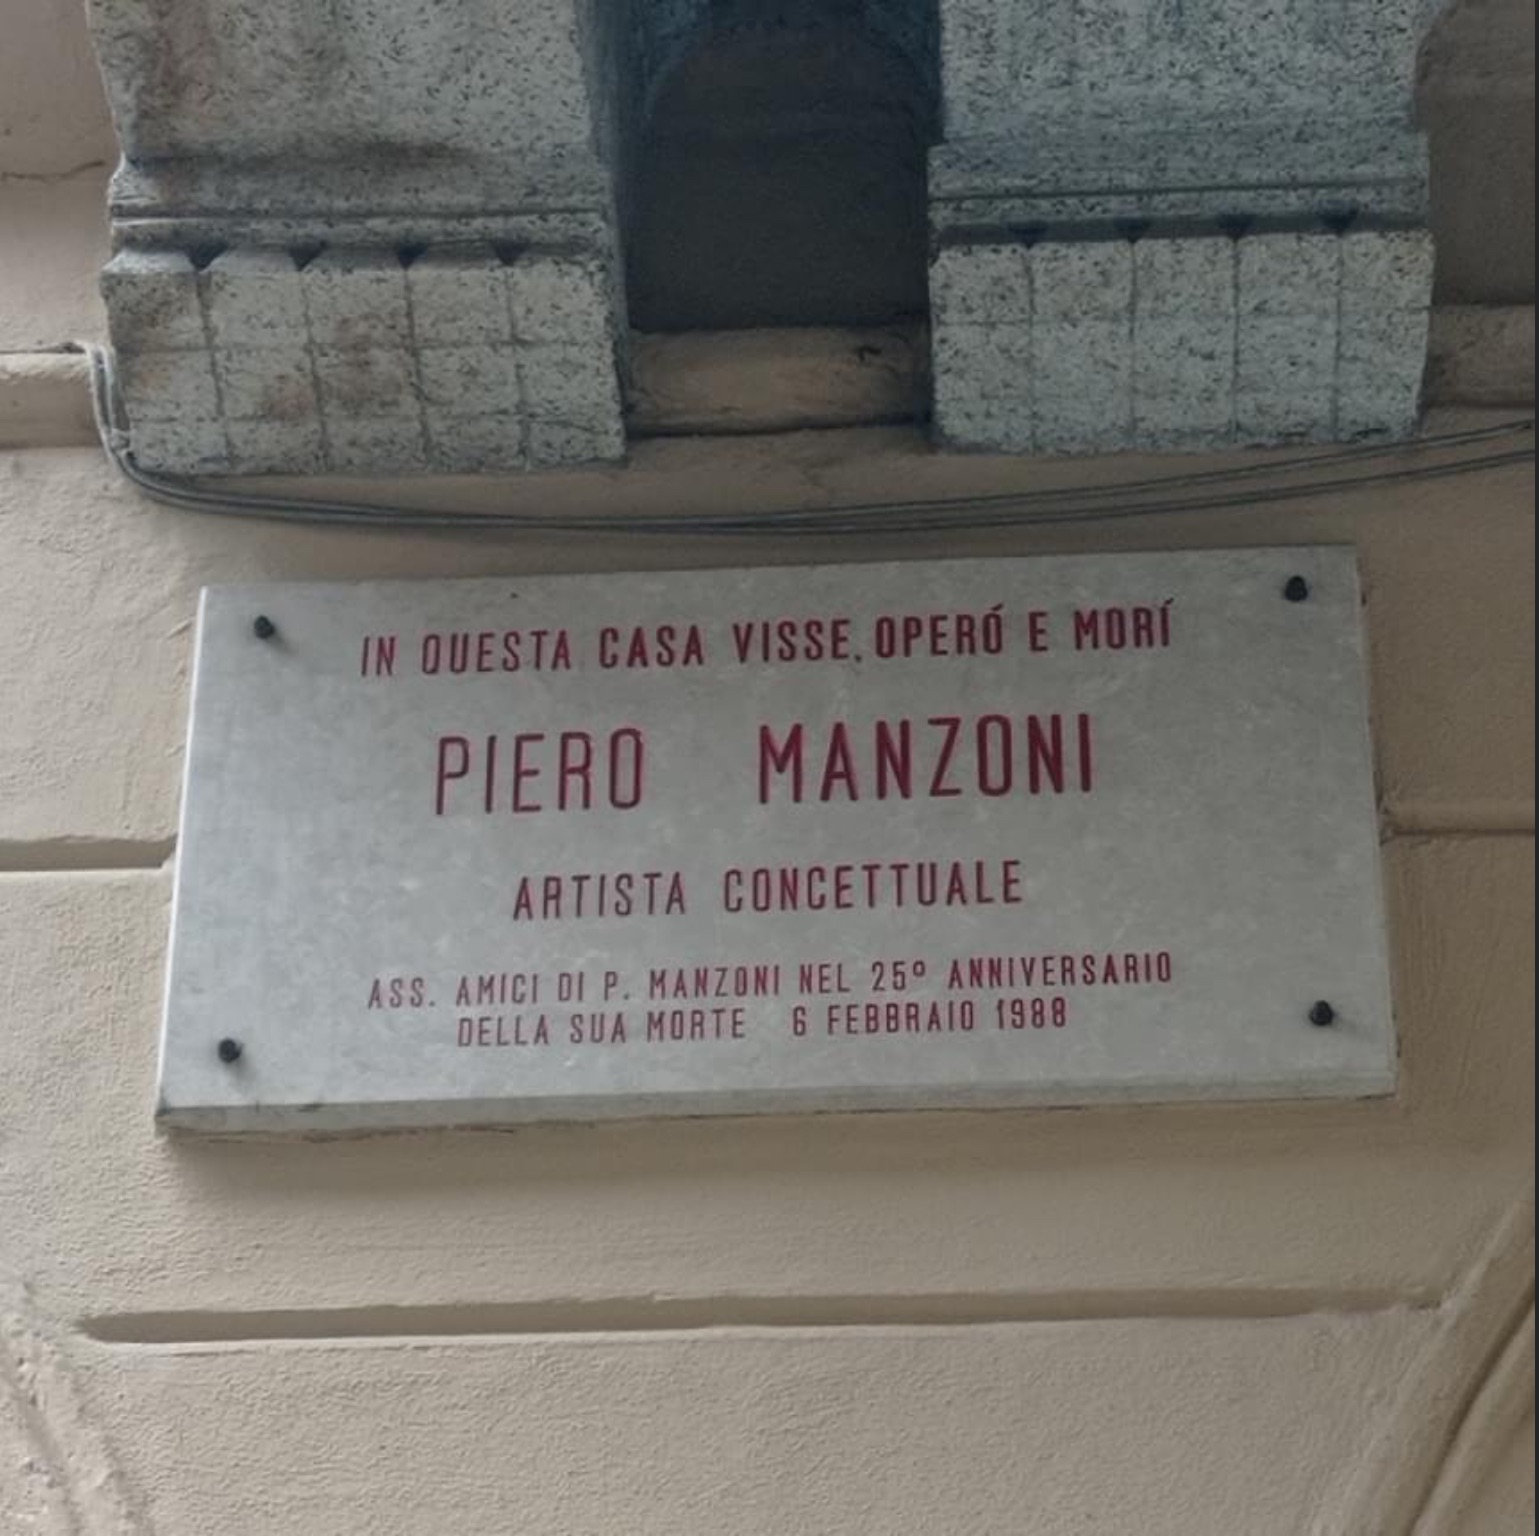 Piero Manzoni più che milanese è soncinese. E una mostra lo celebra nella sua Soncino.